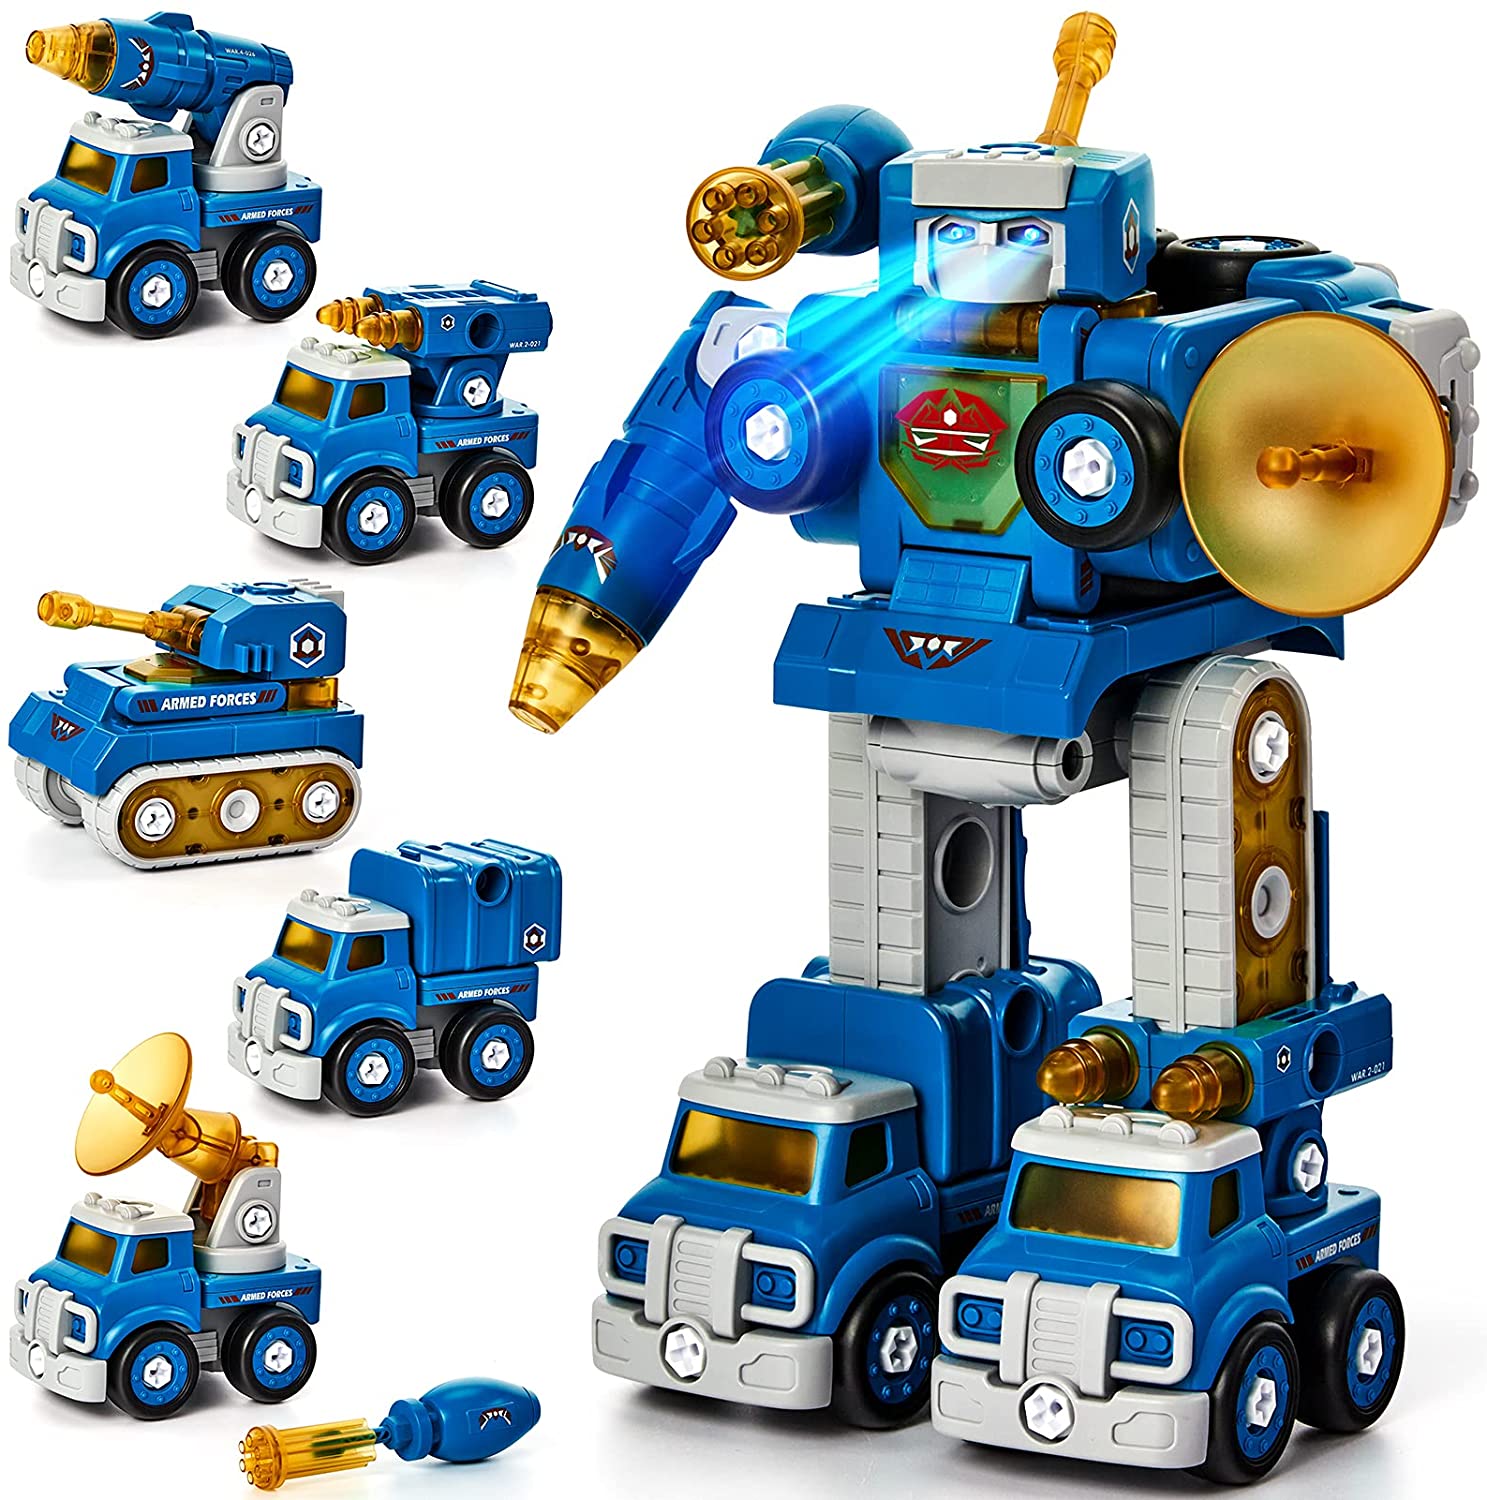  Juguetes para niños de 6 años, 5 en 1 transforman los bots de  rescate de los juguetes de robot desmontables para niños de 4, 5-7 y 8,  juguetes de robot STEM